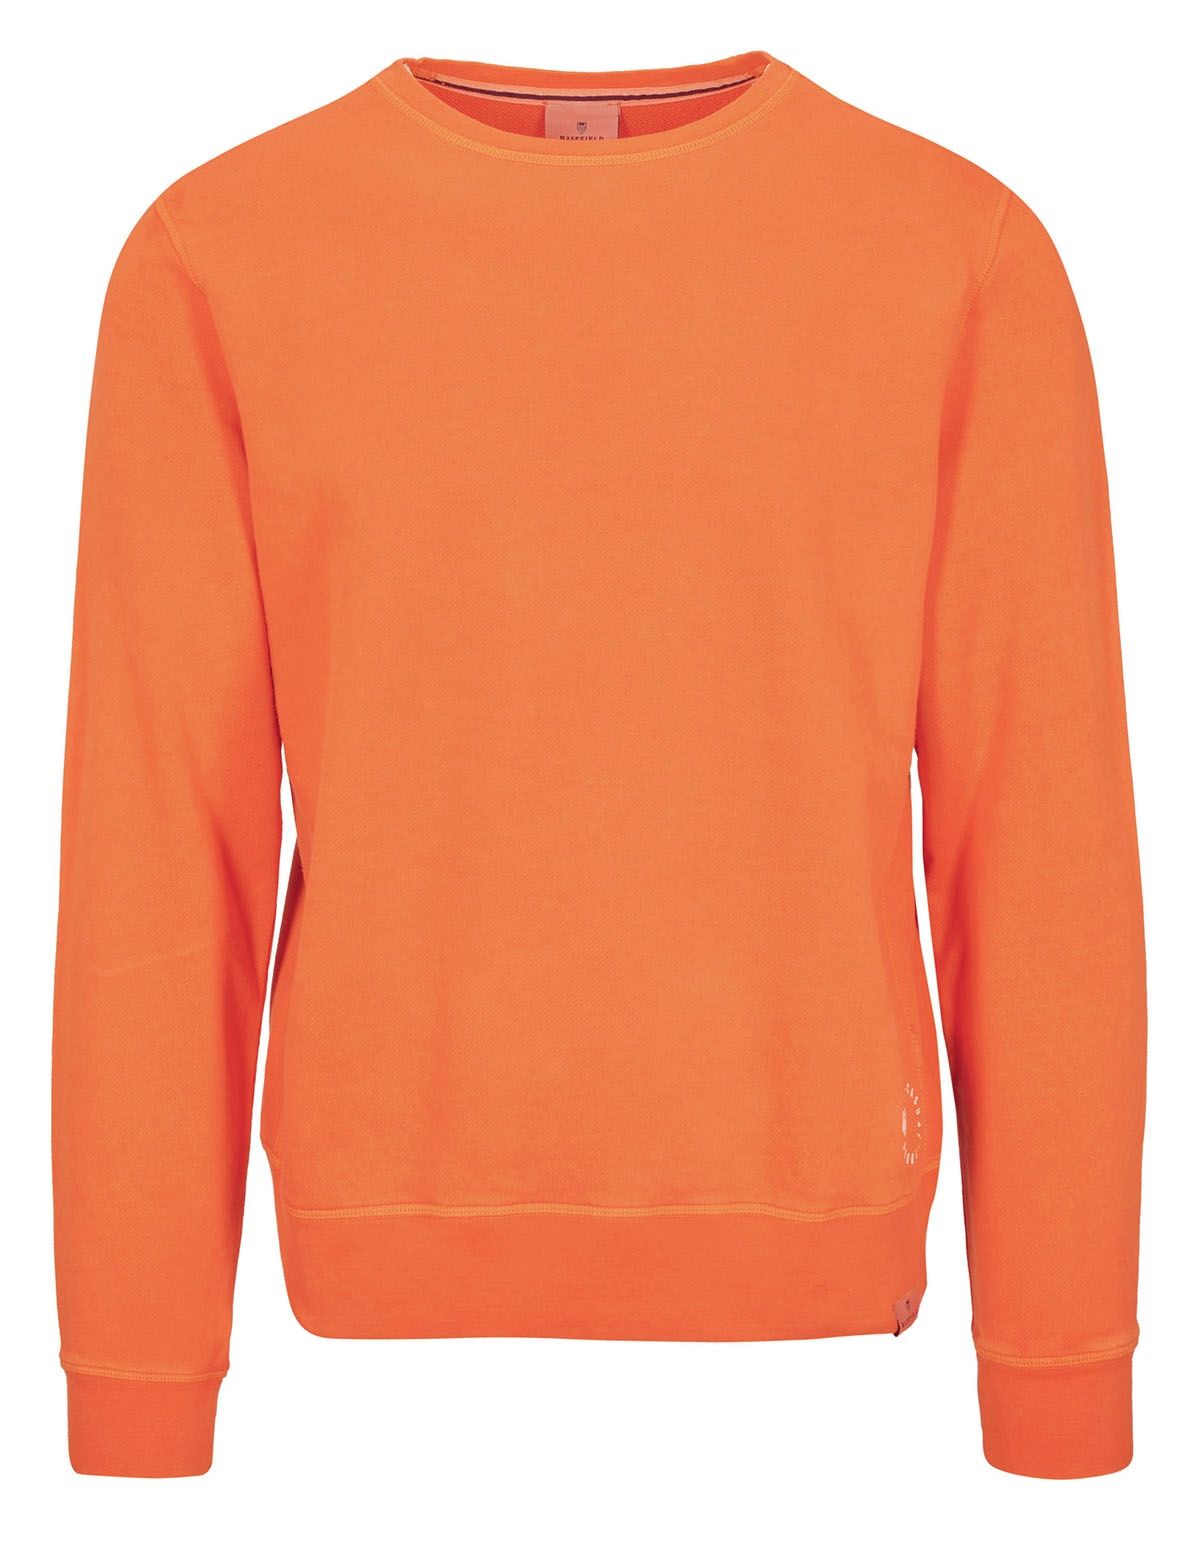 Rundhals Sweatshirt mit Print - Orange